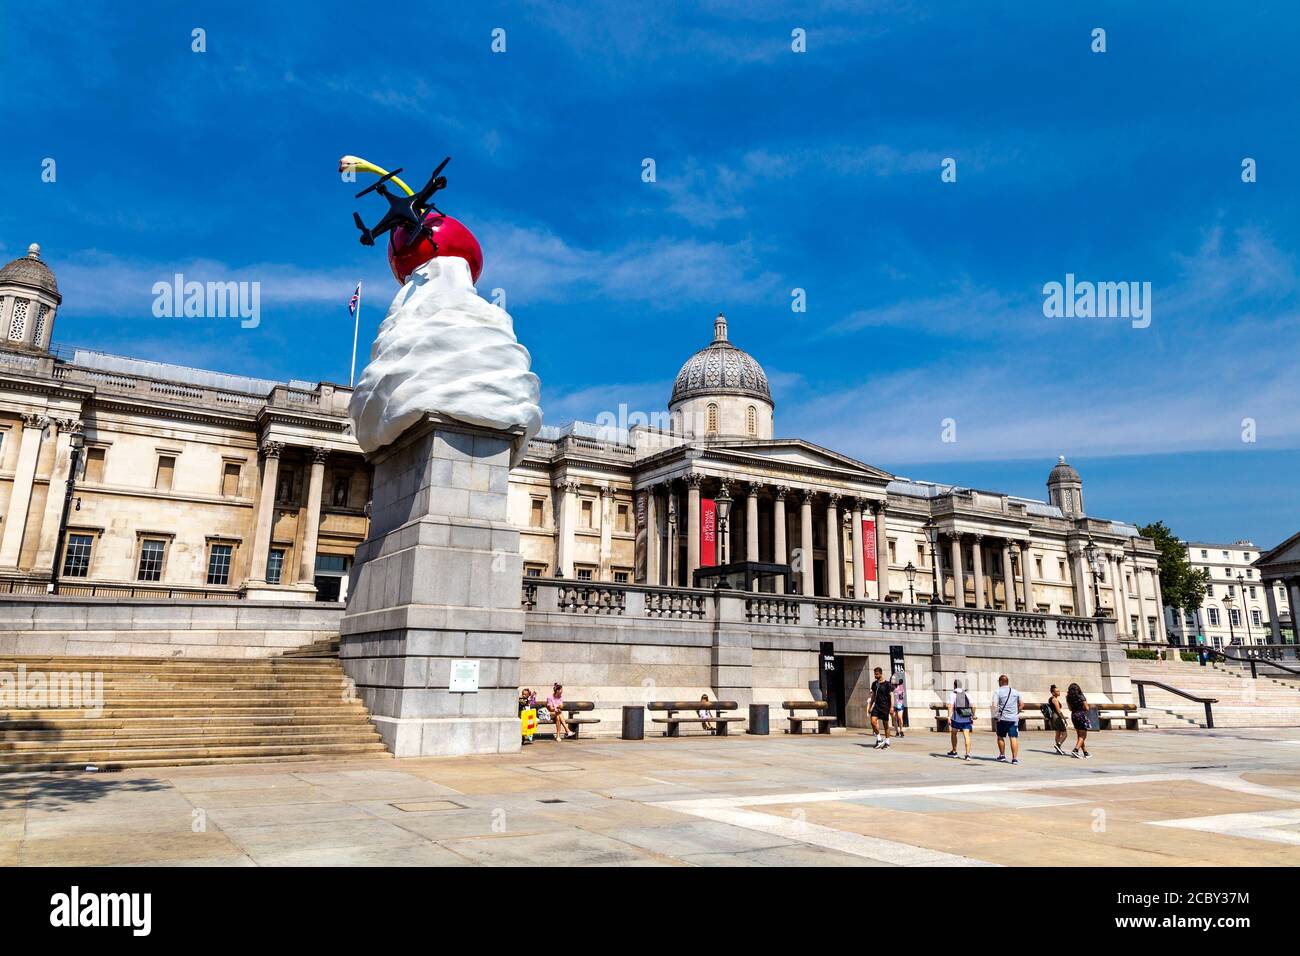 Trafalgar Square quatrième sculpture de Plinth 'The End' par l'artiste Heather Phillipson, représentant un tourbillon de glace, de cerise, de drone et de mouche, Londres, Royaume-Uni Banque D'Images